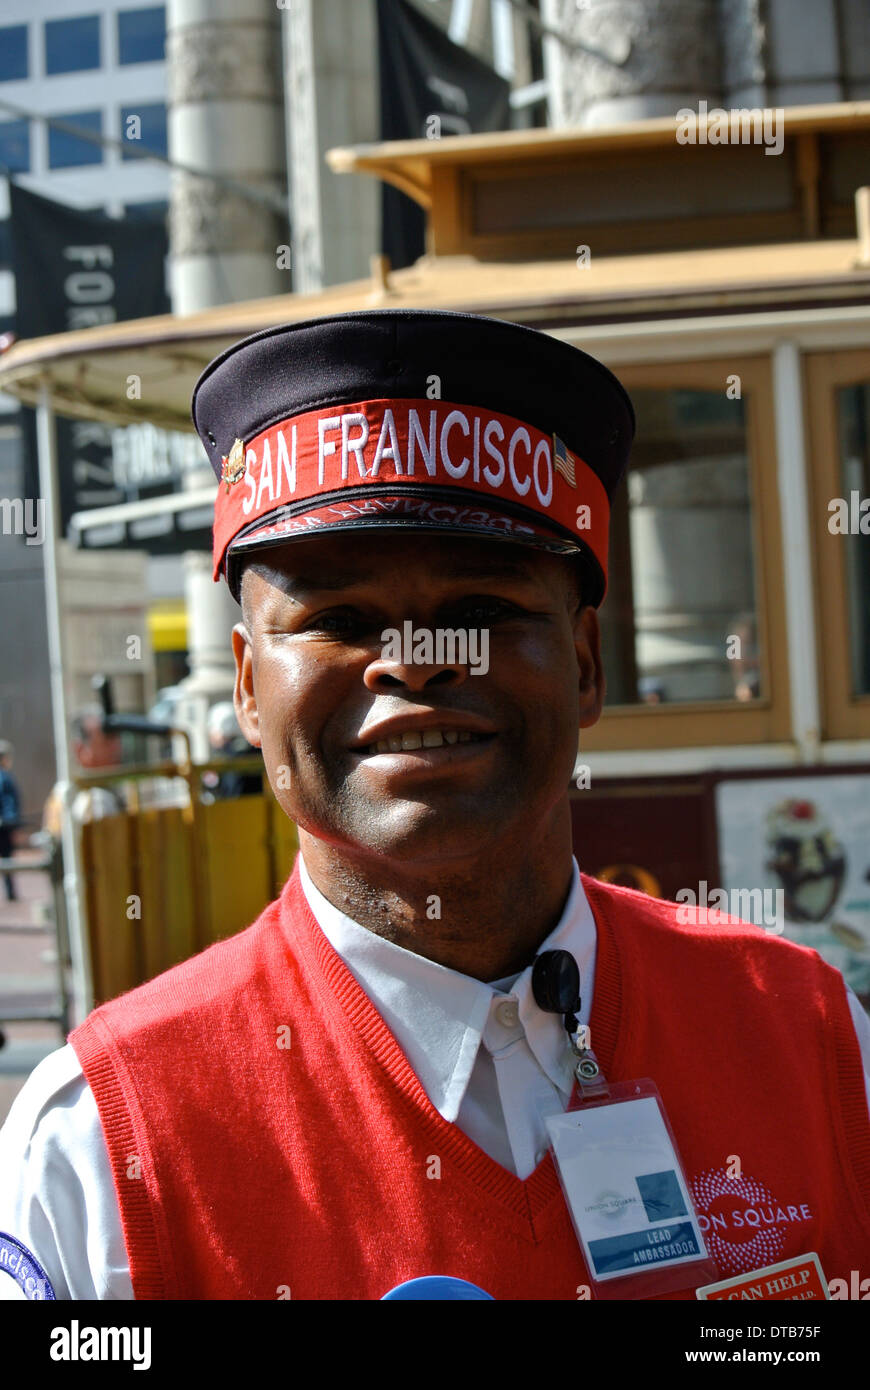 Wayne embajador de plomo para Union square plantea la puja para la cámara en el Wowell st. Paseo de San Francisco. Foto de stock